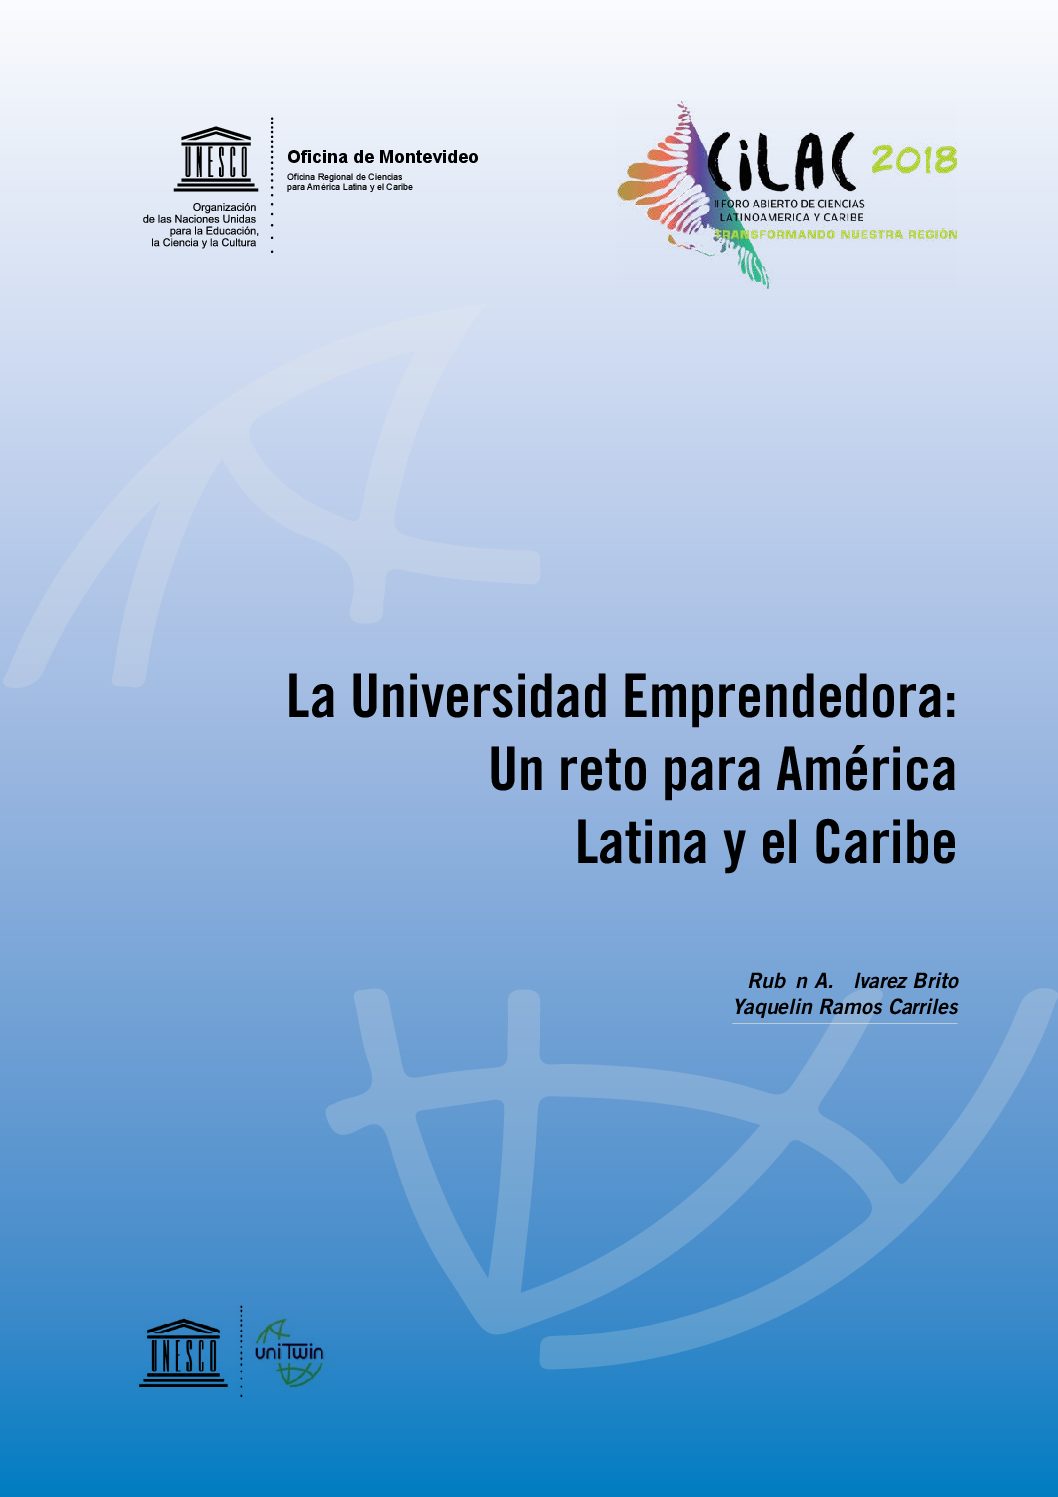 La Universidad Emprendedora: Un reto para América Latina y el Caribe